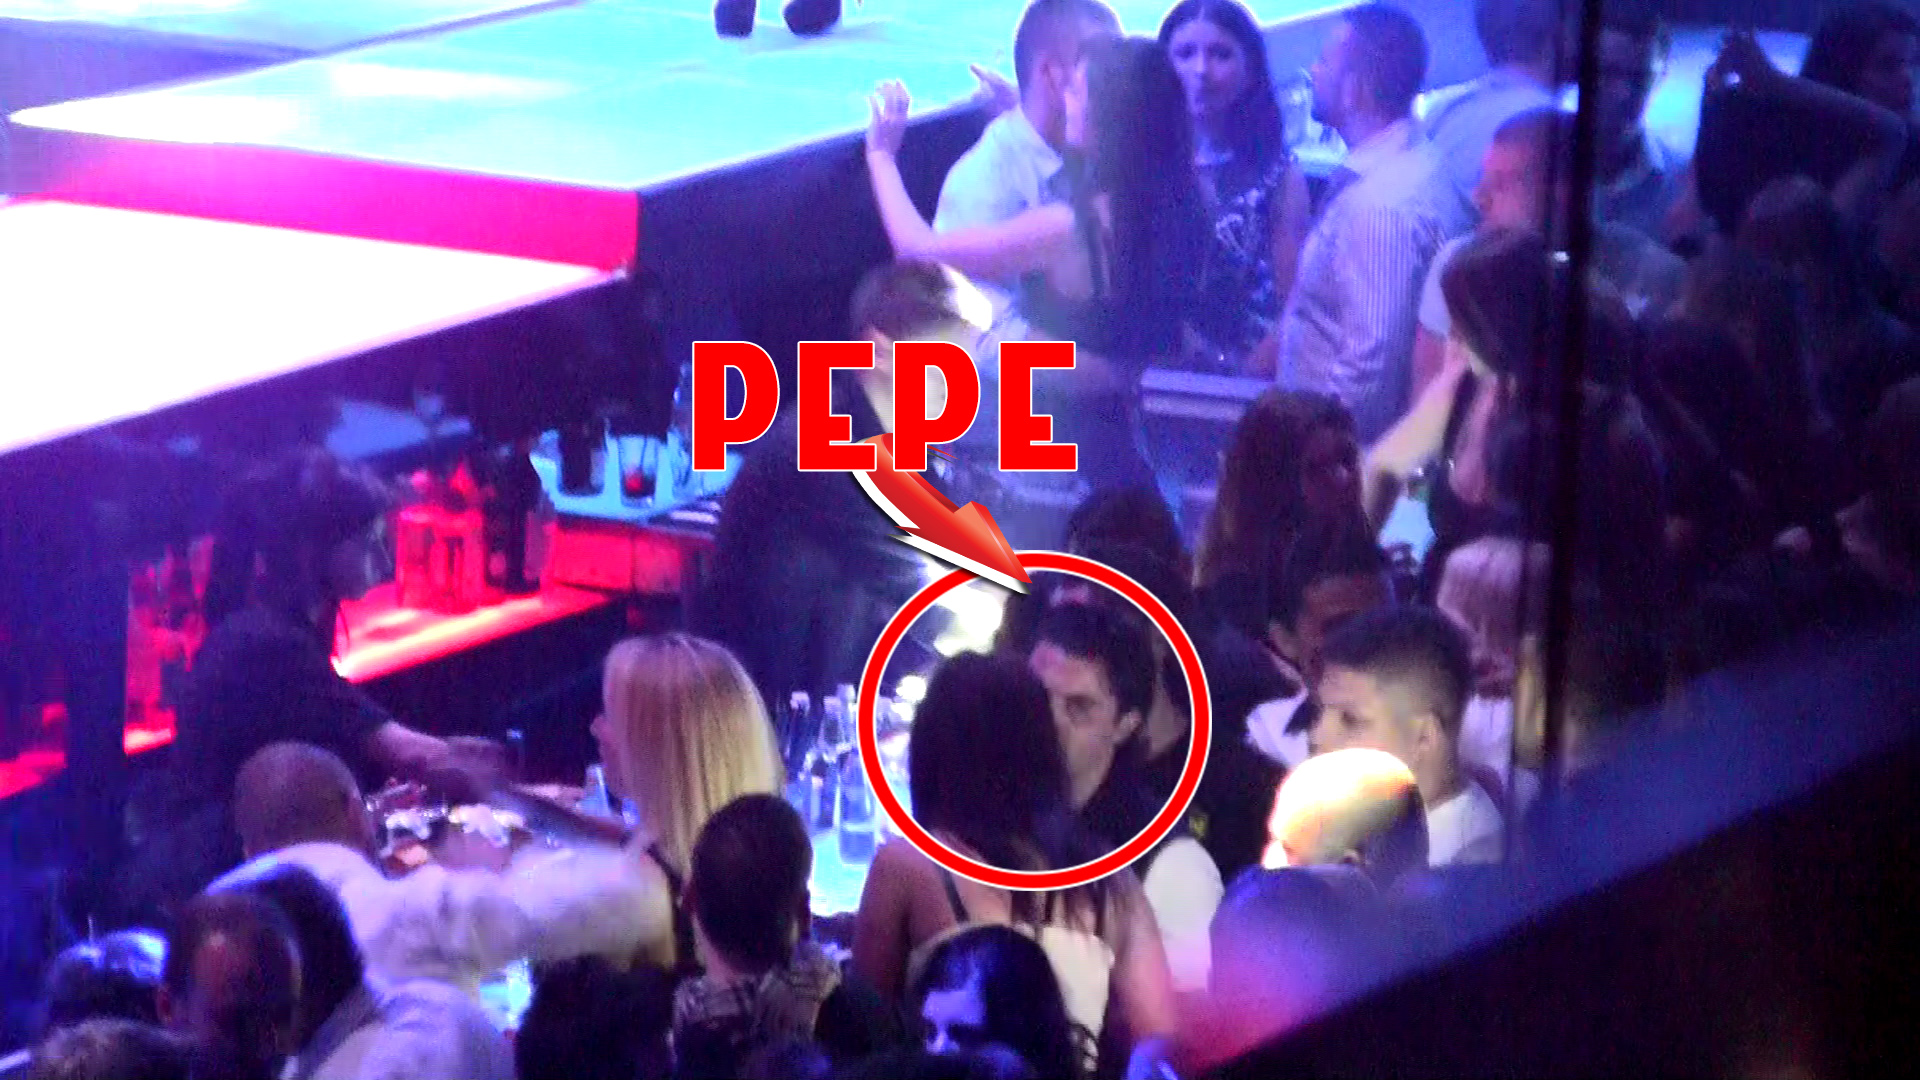 Pepe s-a simtit bine in club alaturi de tovarasii lui si o bruneta misterioasa